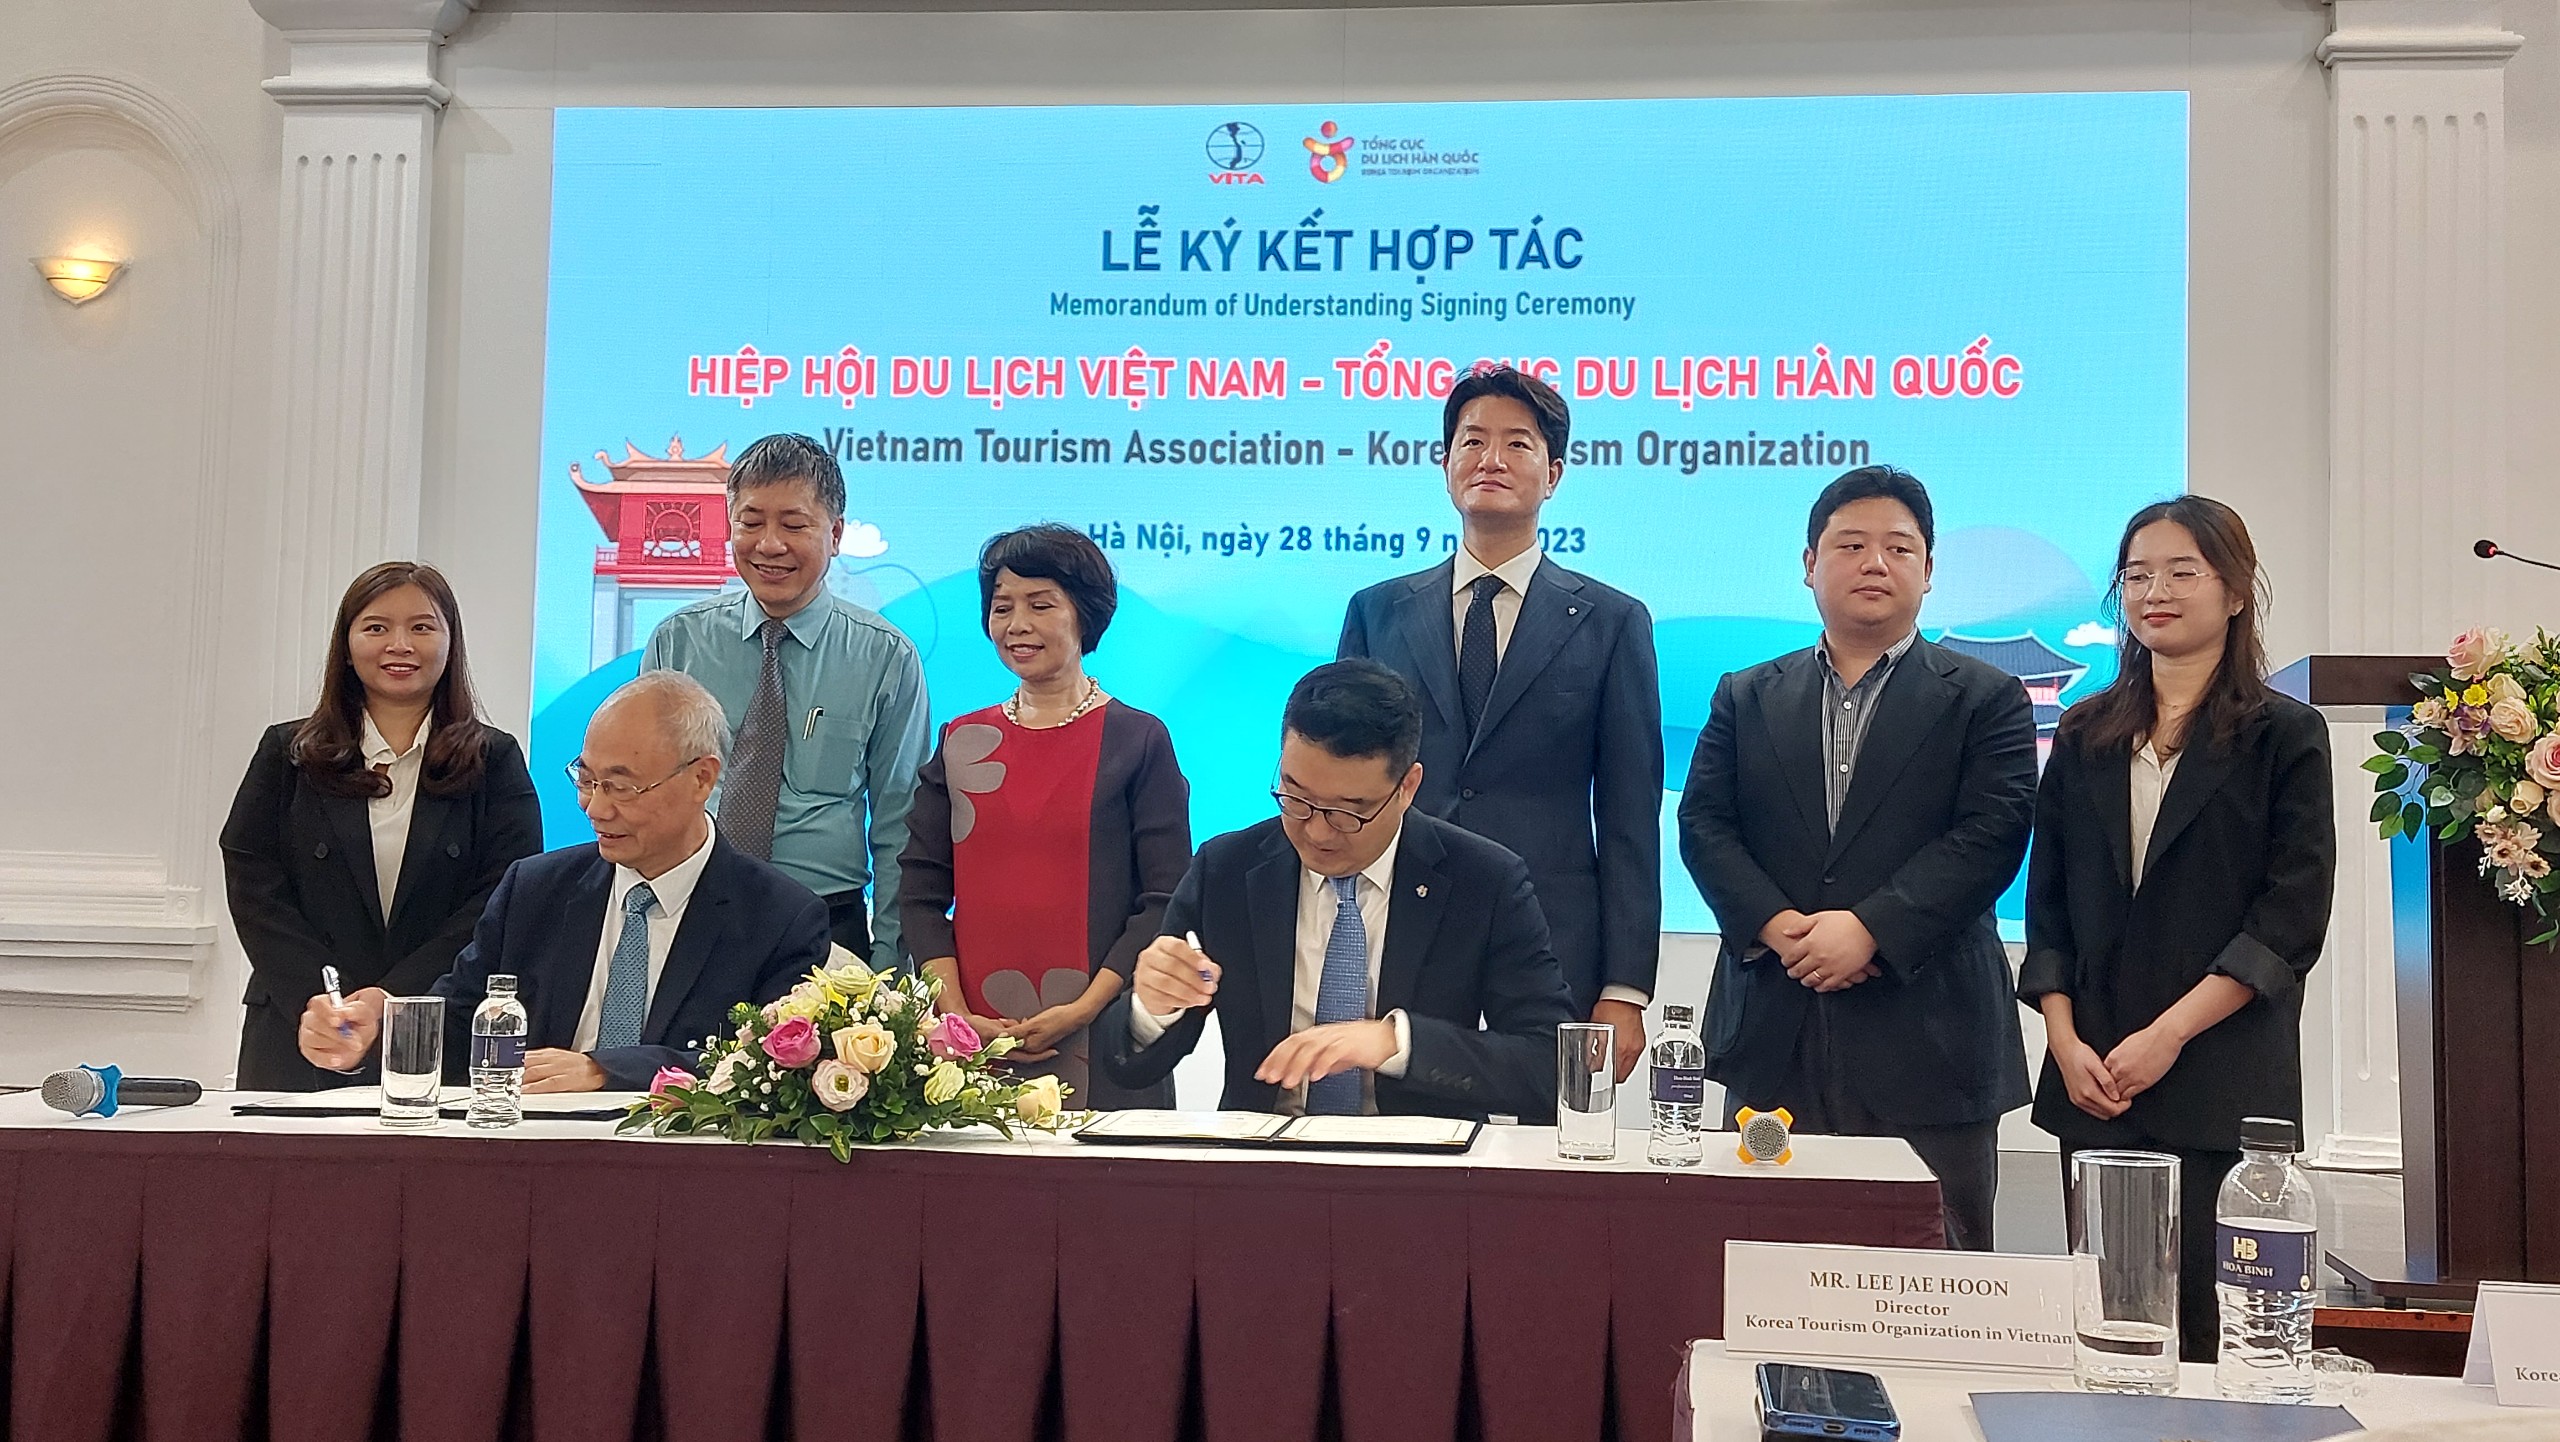 Hiệp hội Du lịch Việt Nam và Tổng cục Du lịch Hàn Quốc đã ký kết biên bản ghi nhớ tăng cường hợp tác và xúc tiến du lịch song phương giai đoạn 2023 – 2024